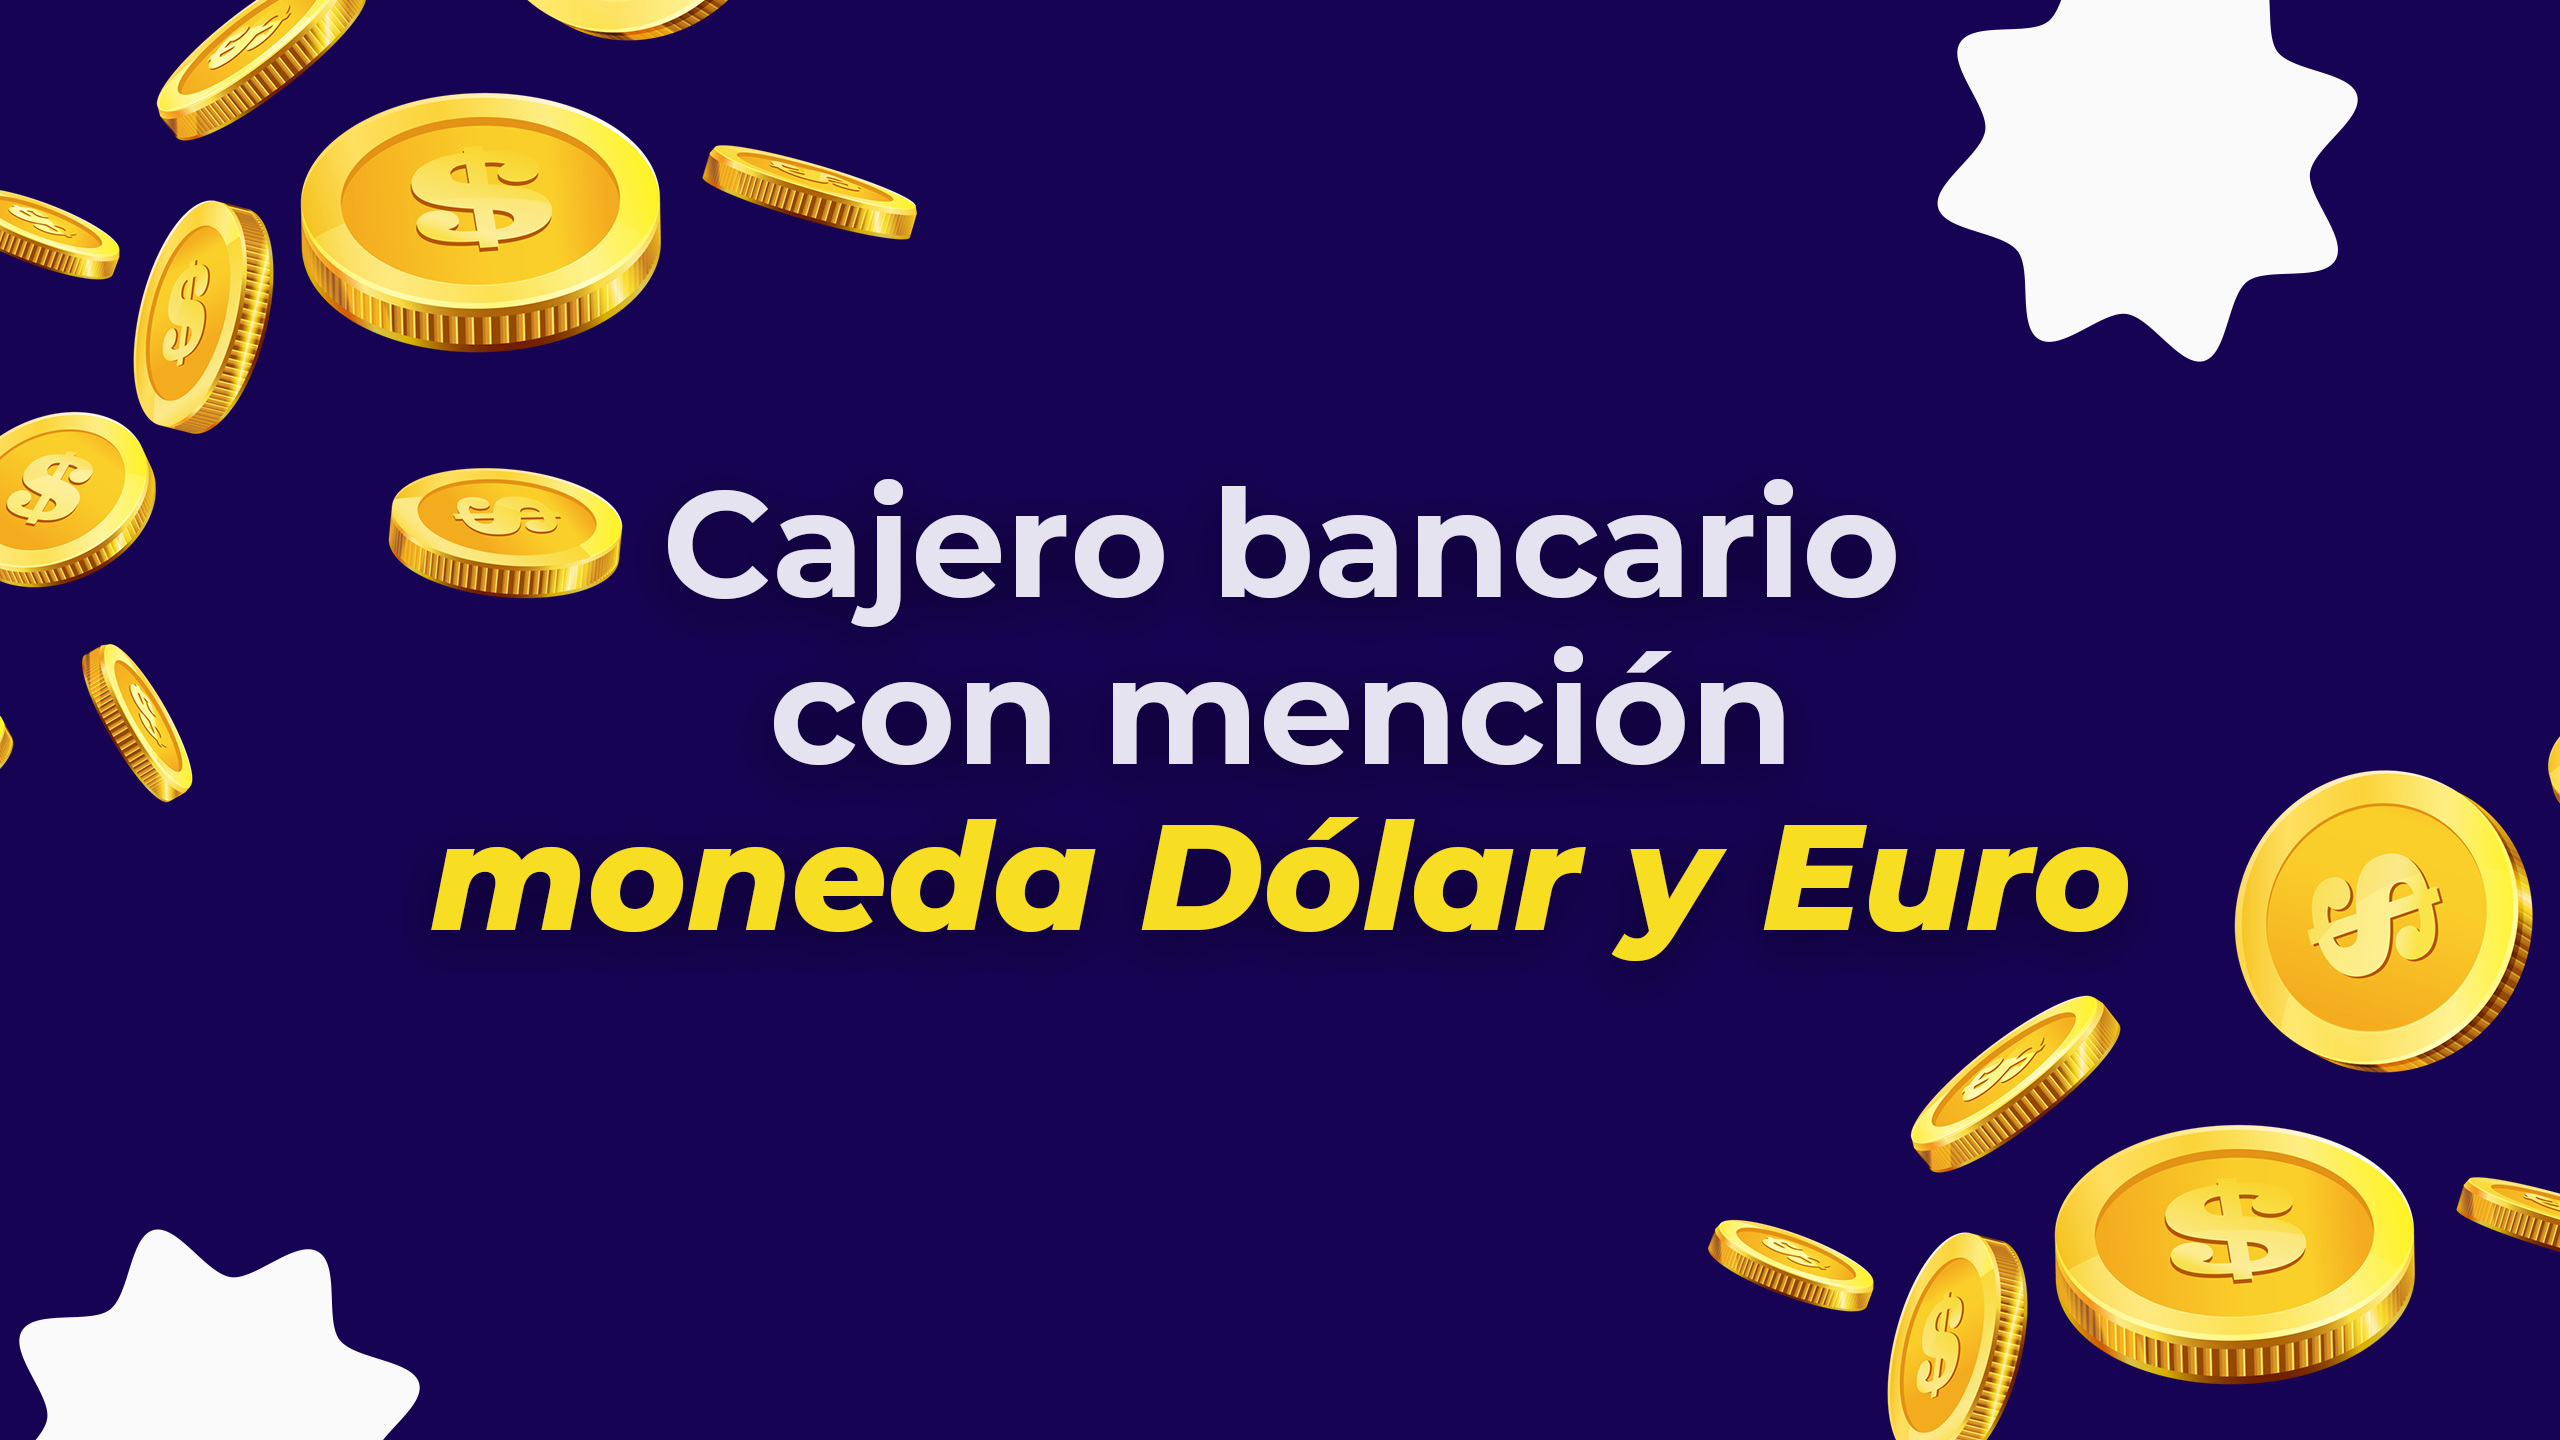 Cajero bancario con mención moneda Dólar y Euro